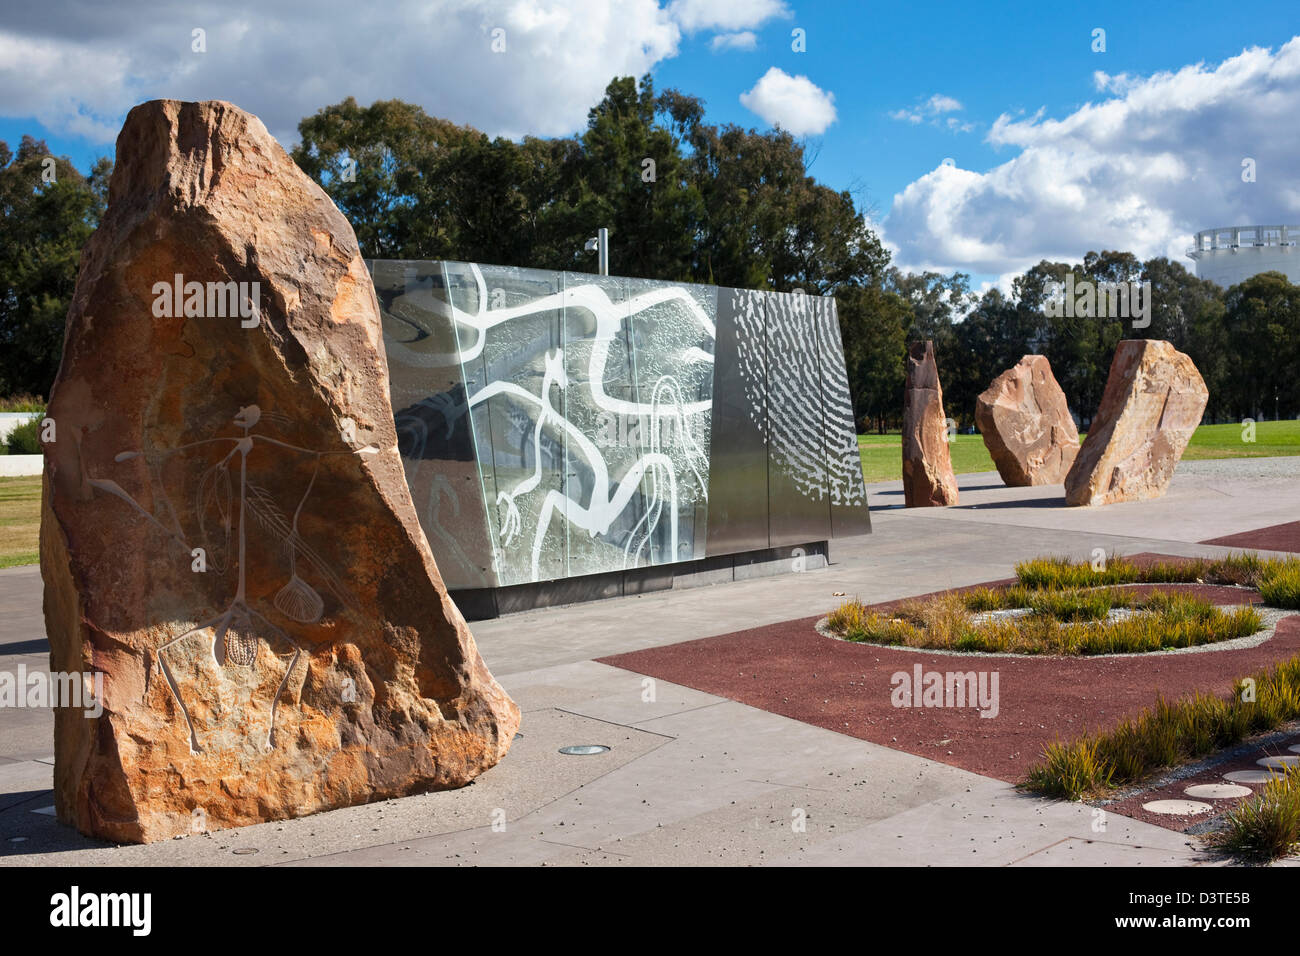 Au lieu d'art autochtone de la réconciliation. Canberra, Territoire de la capitale australienne (ACT), l'Australie Banque D'Images